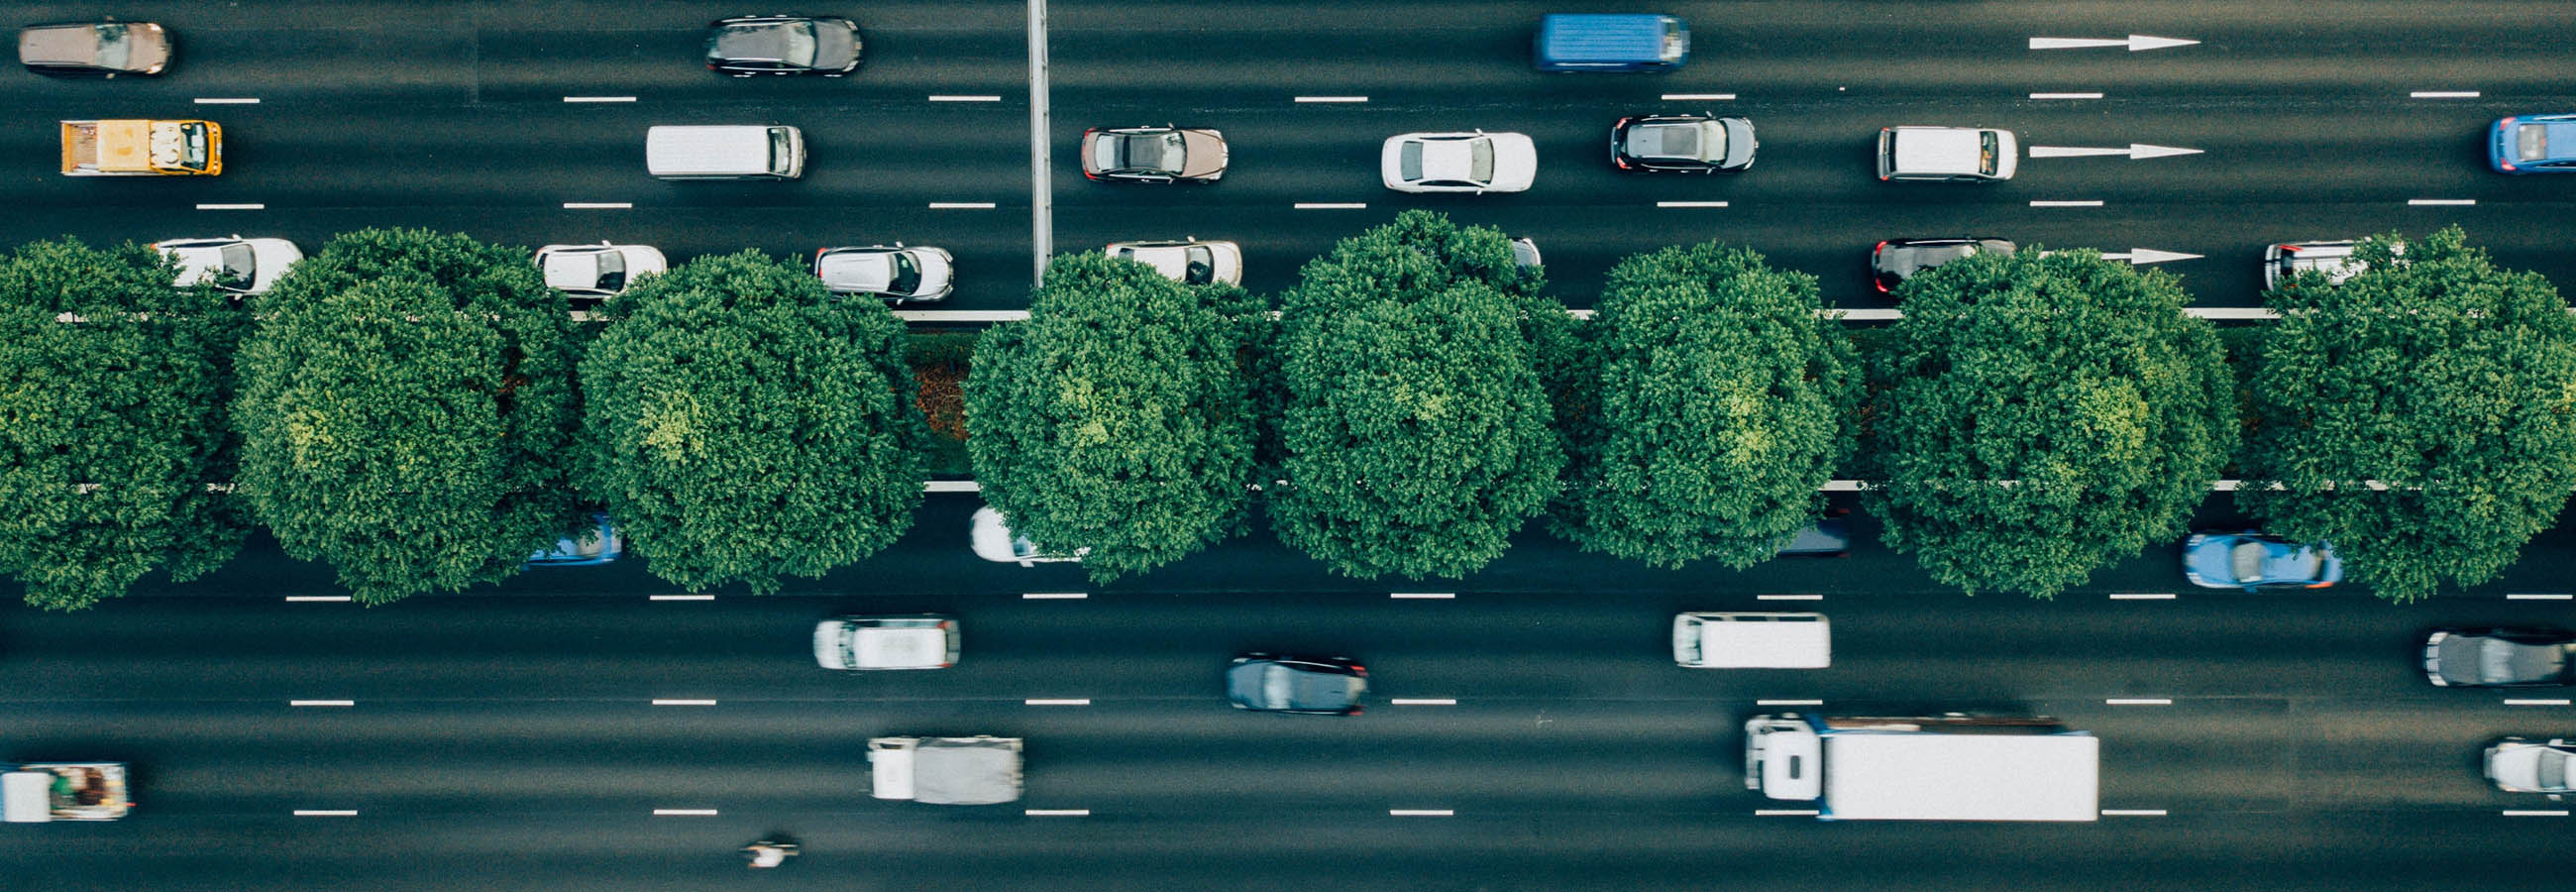 BlaBlaCar предотвращает более 1,6 млн тонн выбросов СО2 в год